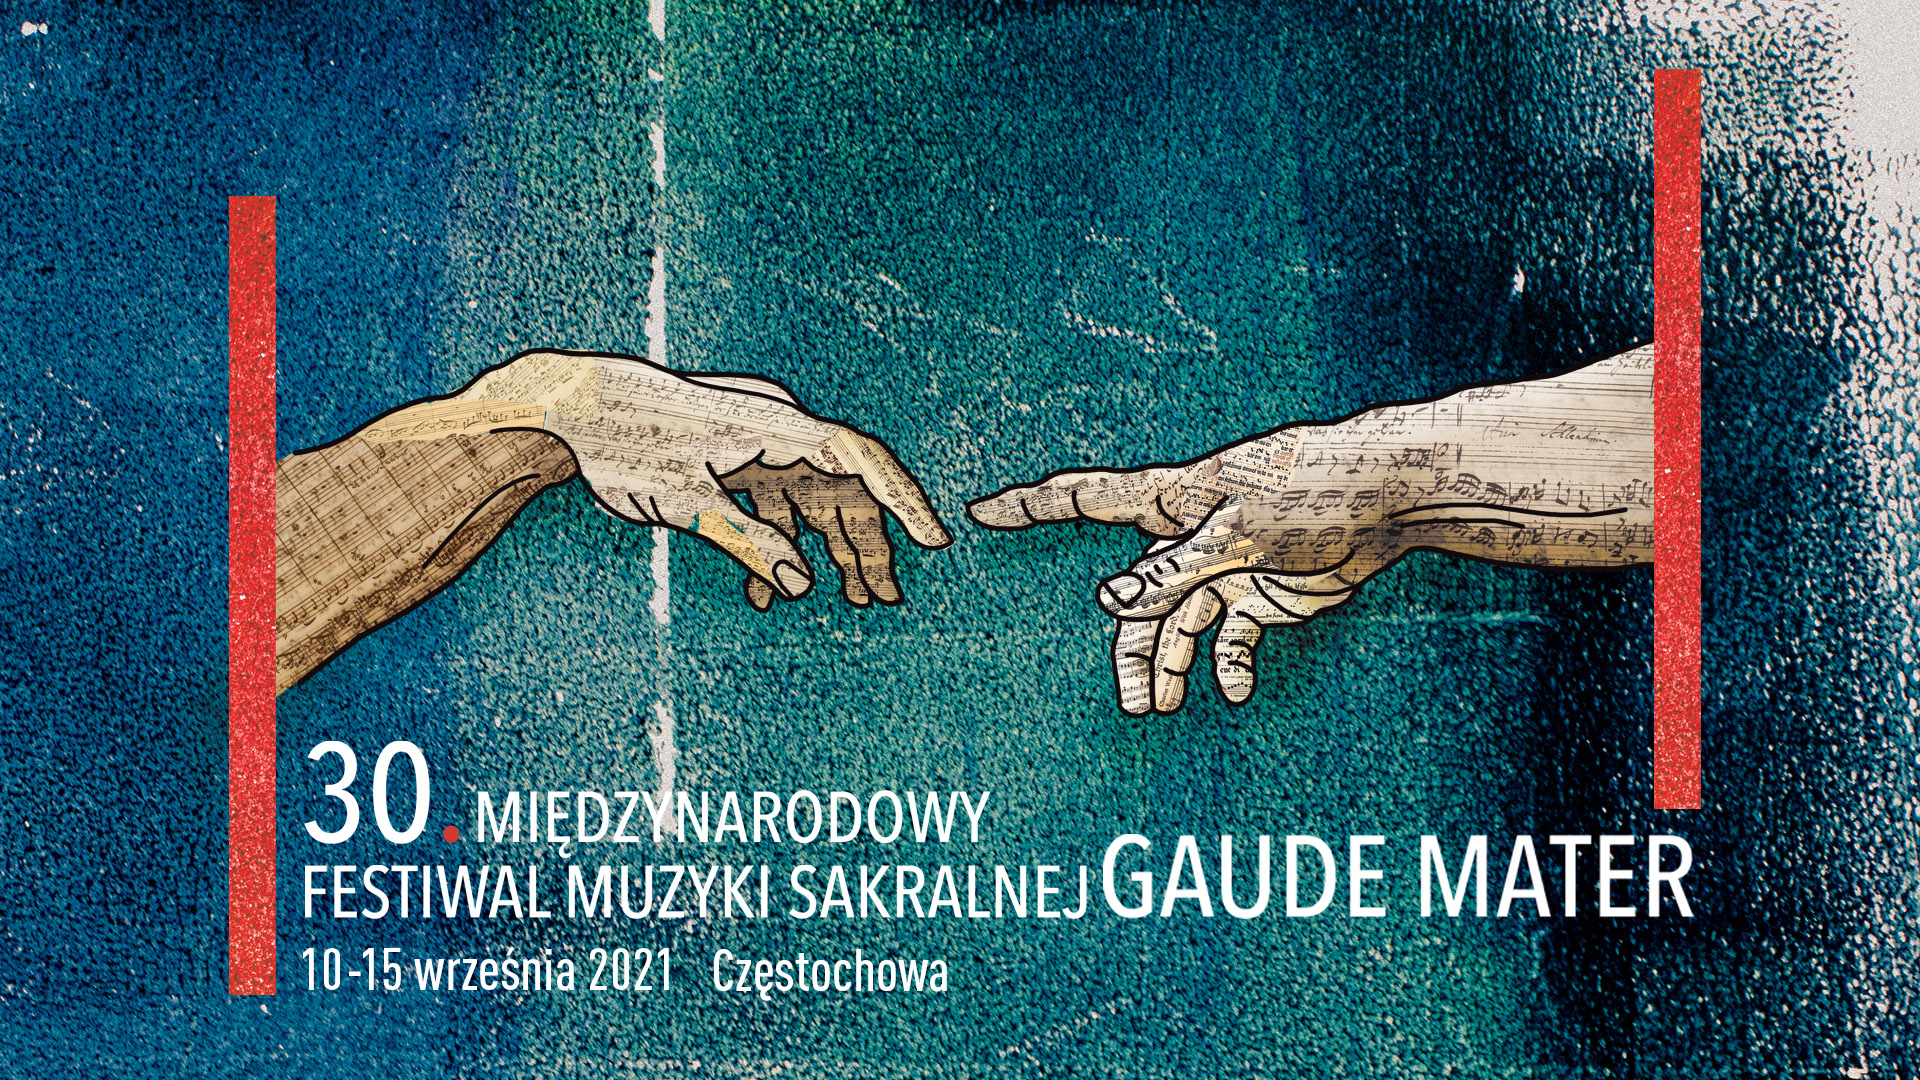 30. Międzynarodowy Festiwal Muzyki Sakralnej Gaude Mater 2021